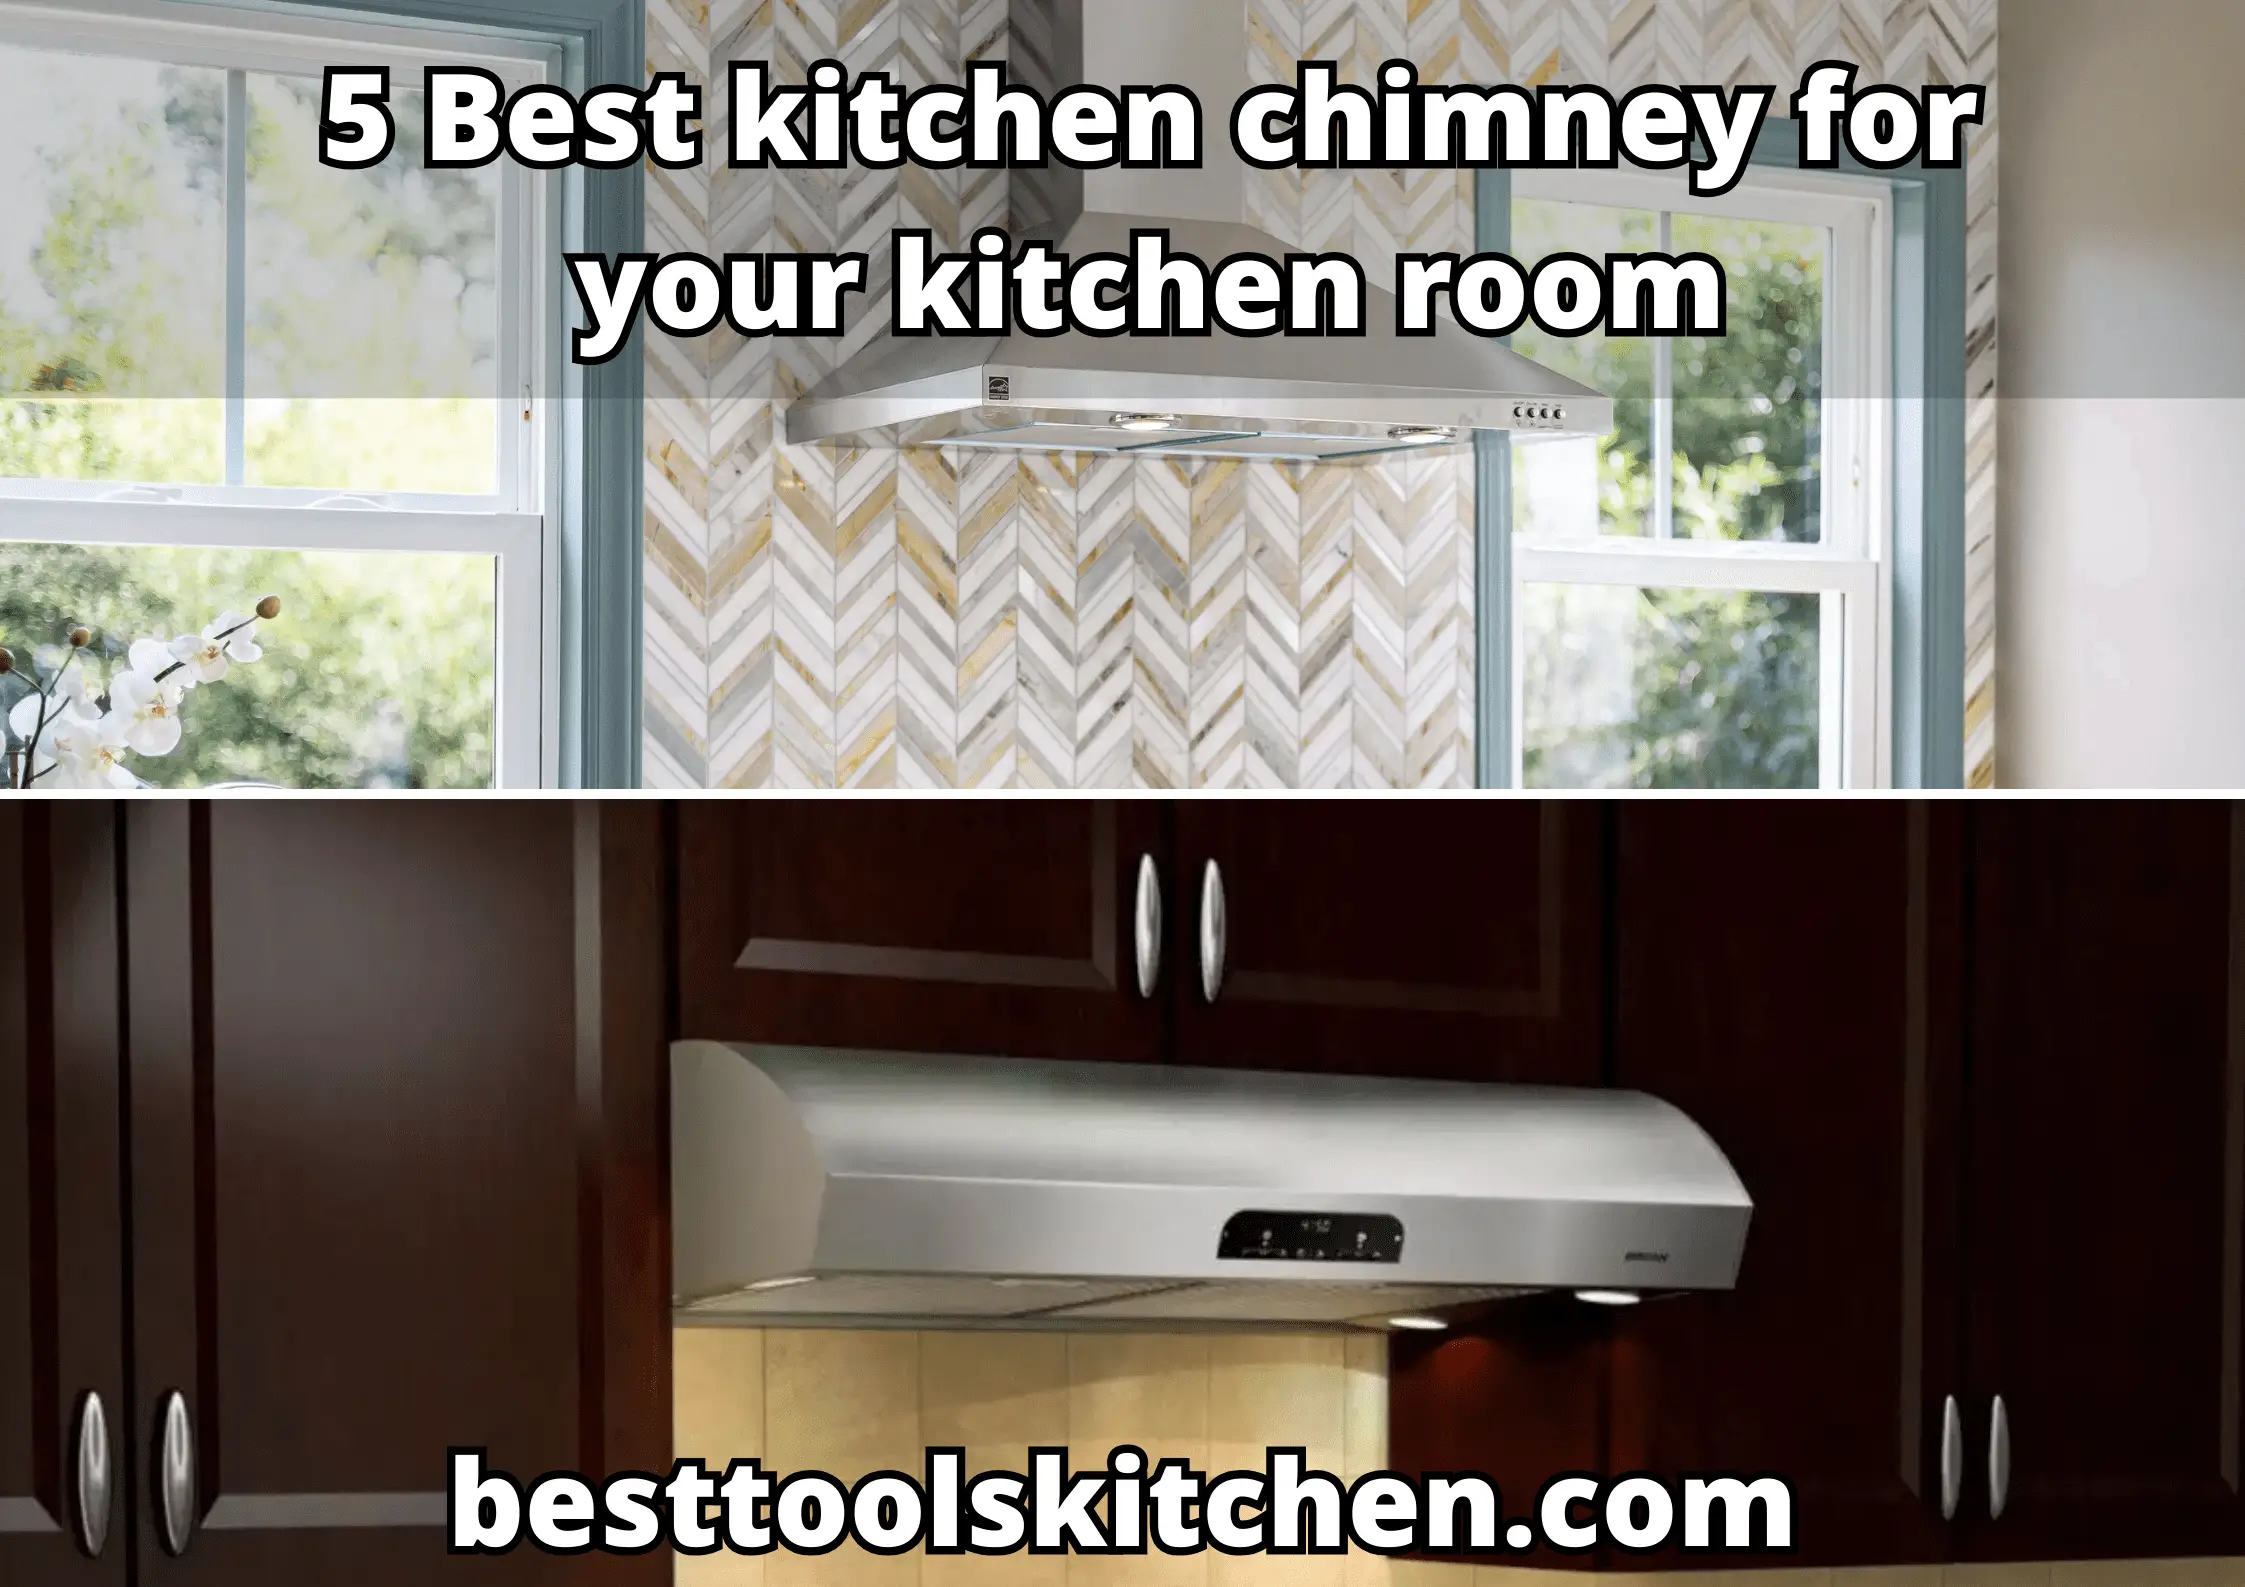 Best kitchen chimney